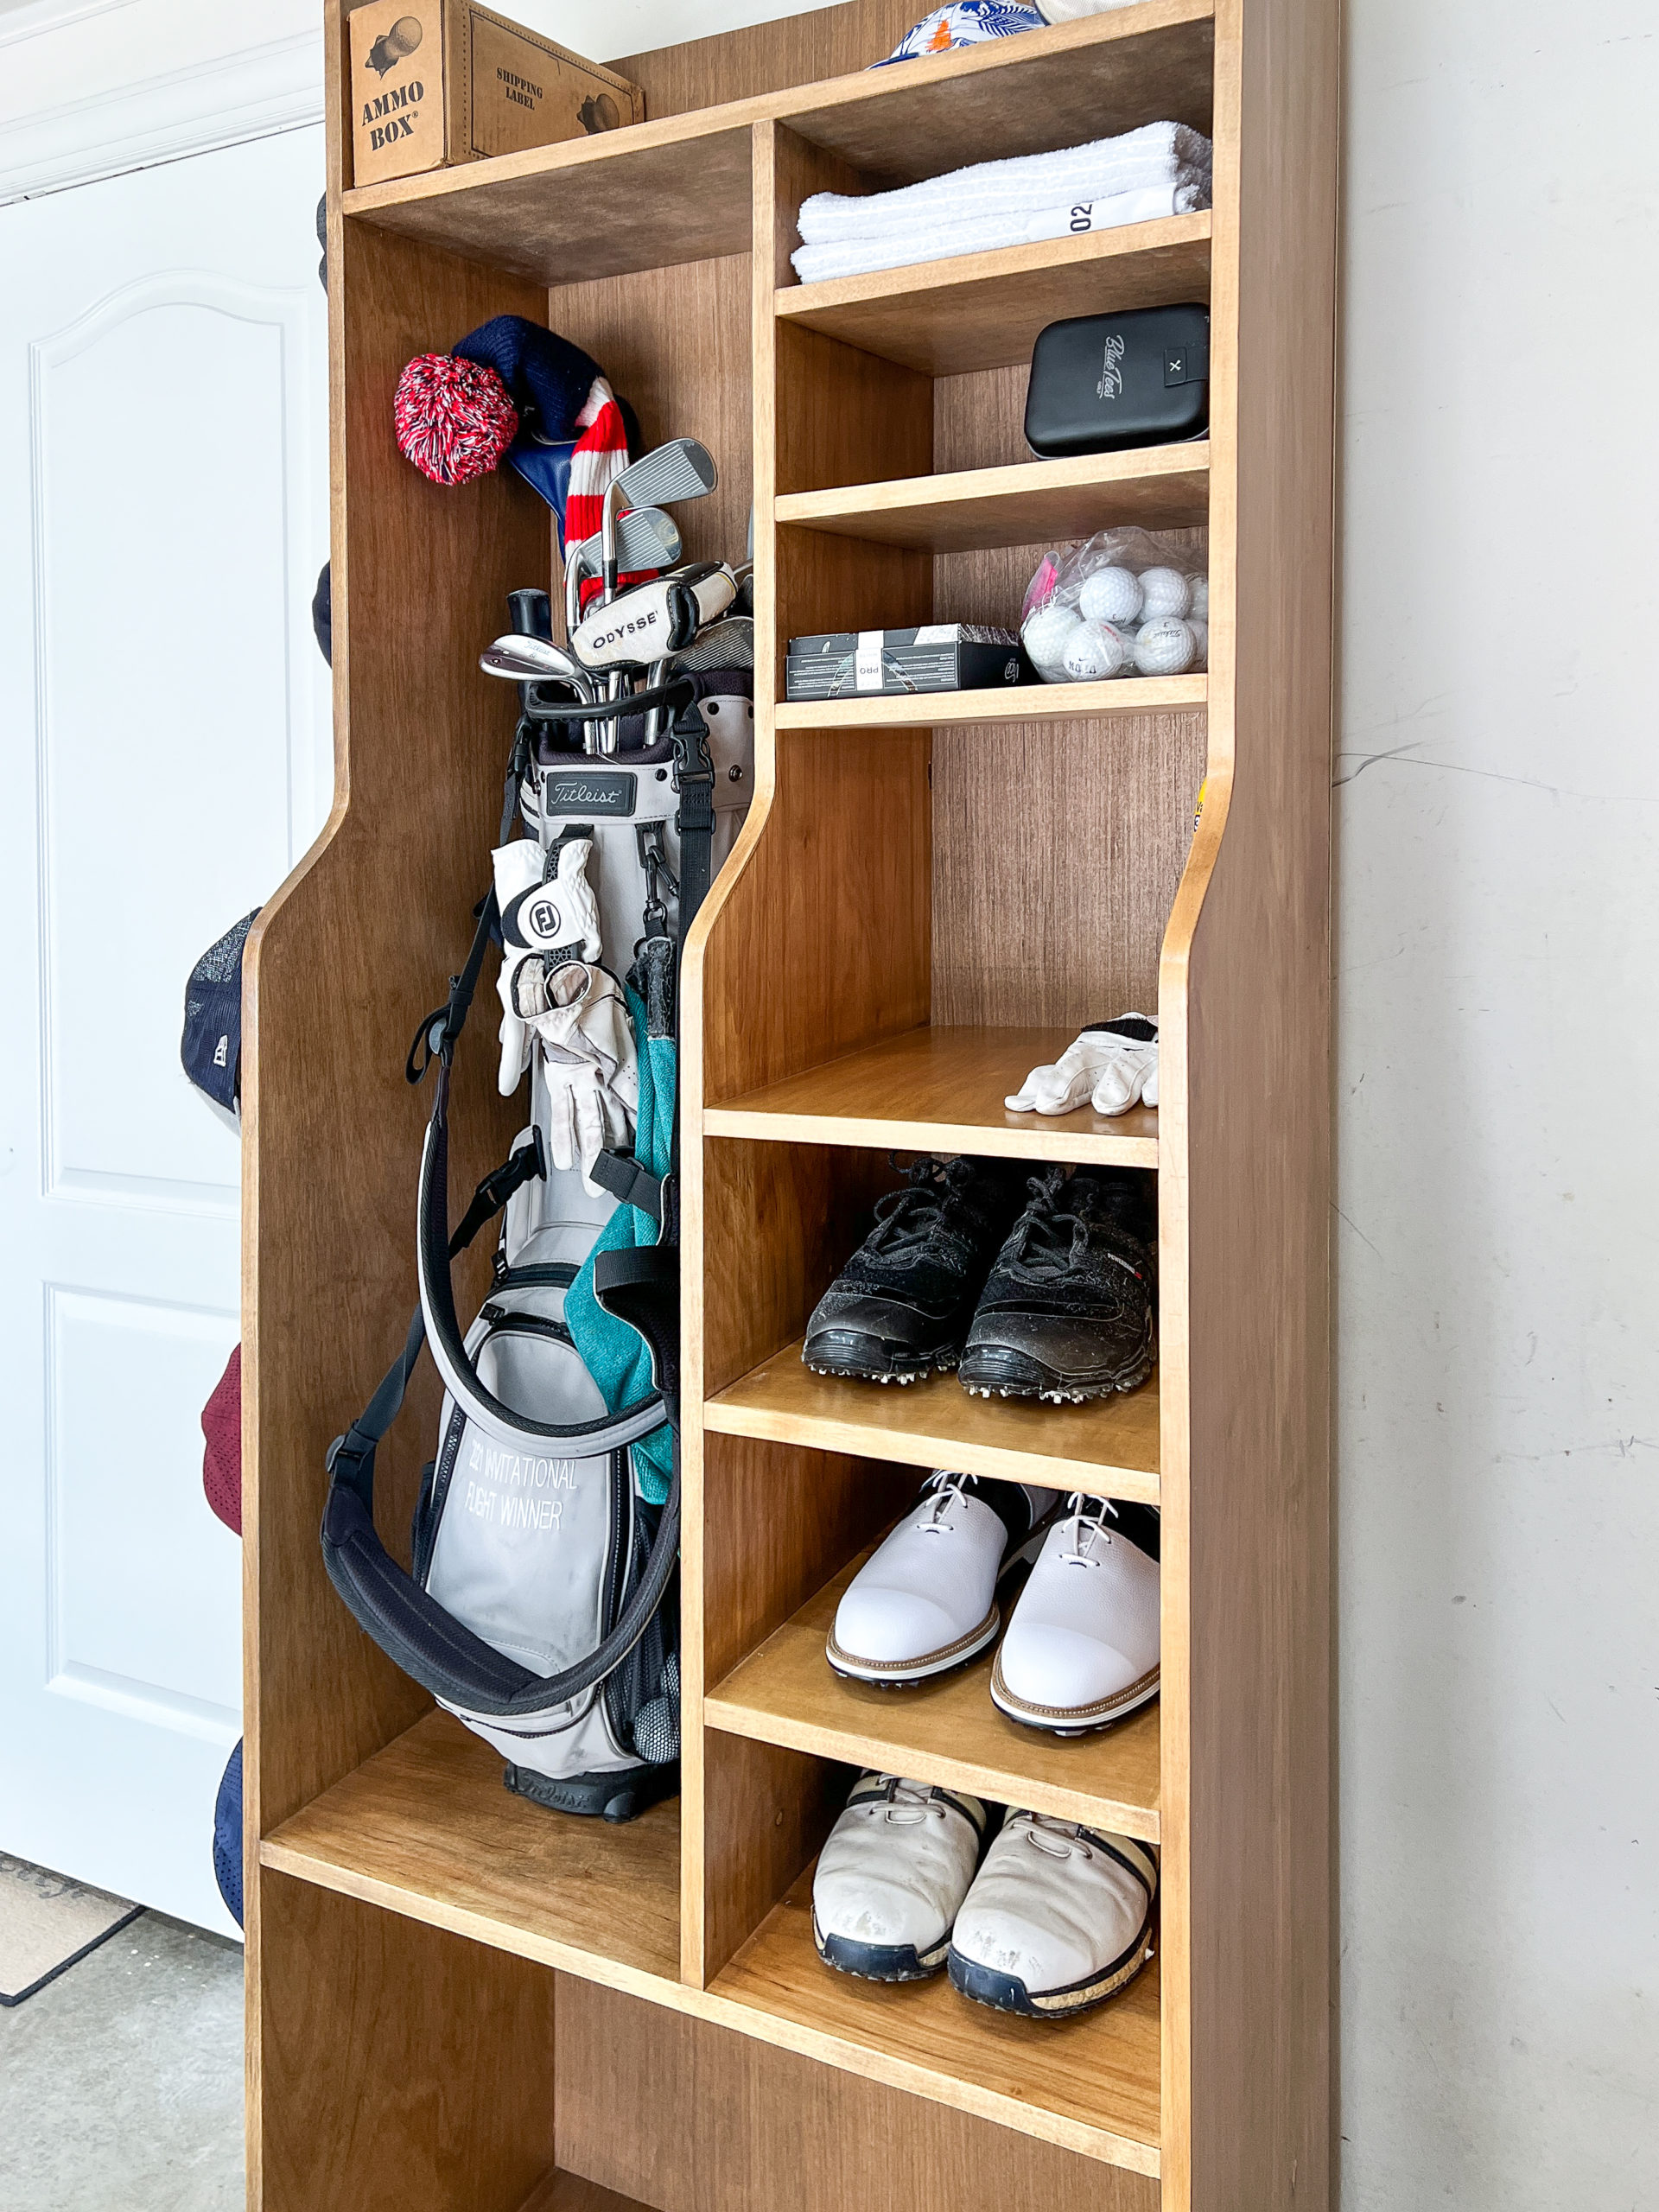 DIY Golf Bag Storage System. Dual storage for clubs plus